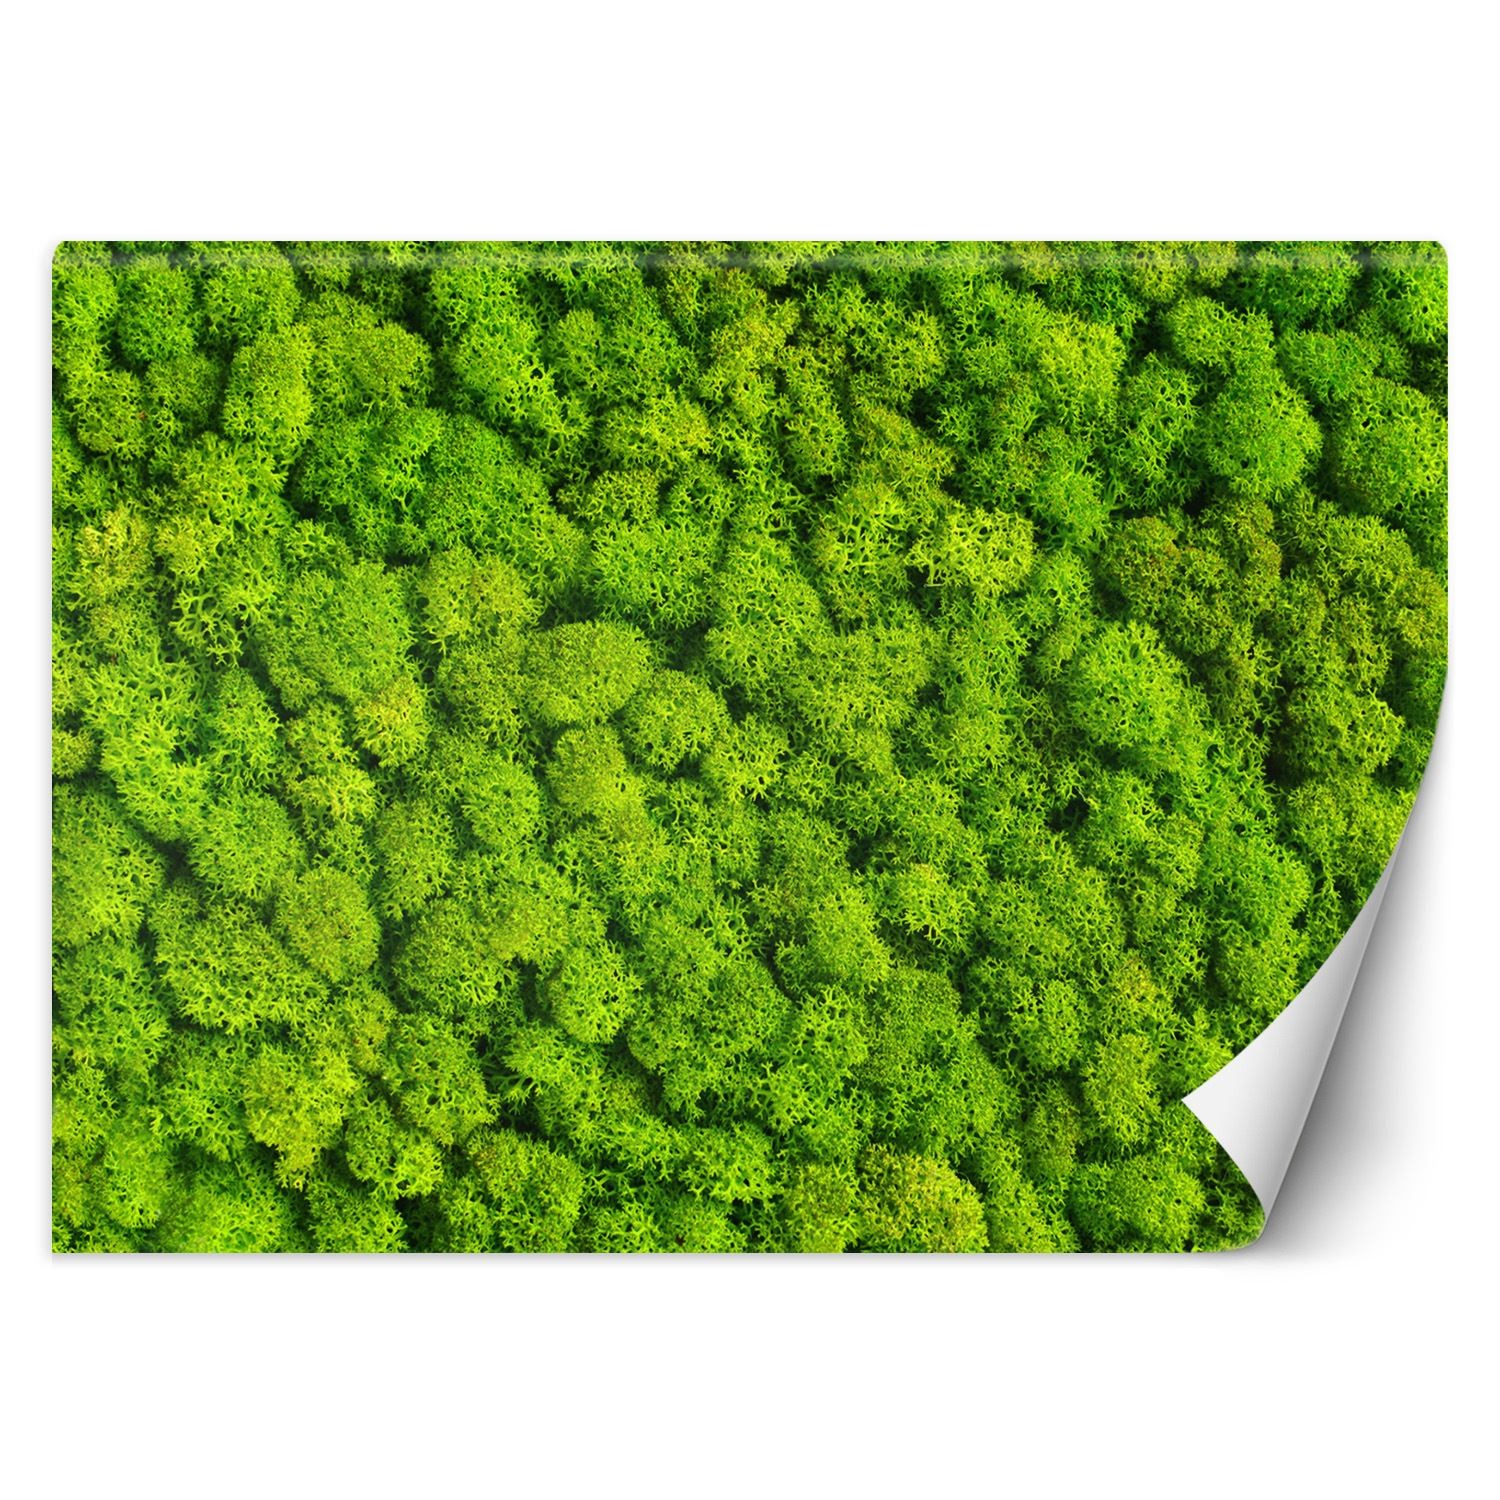 Trend24 – Behang – Weevil Moss – Vliesbehang – Behang Woonkamer – Fotobehang – 300x210x2 cm – Incl. behanglijm